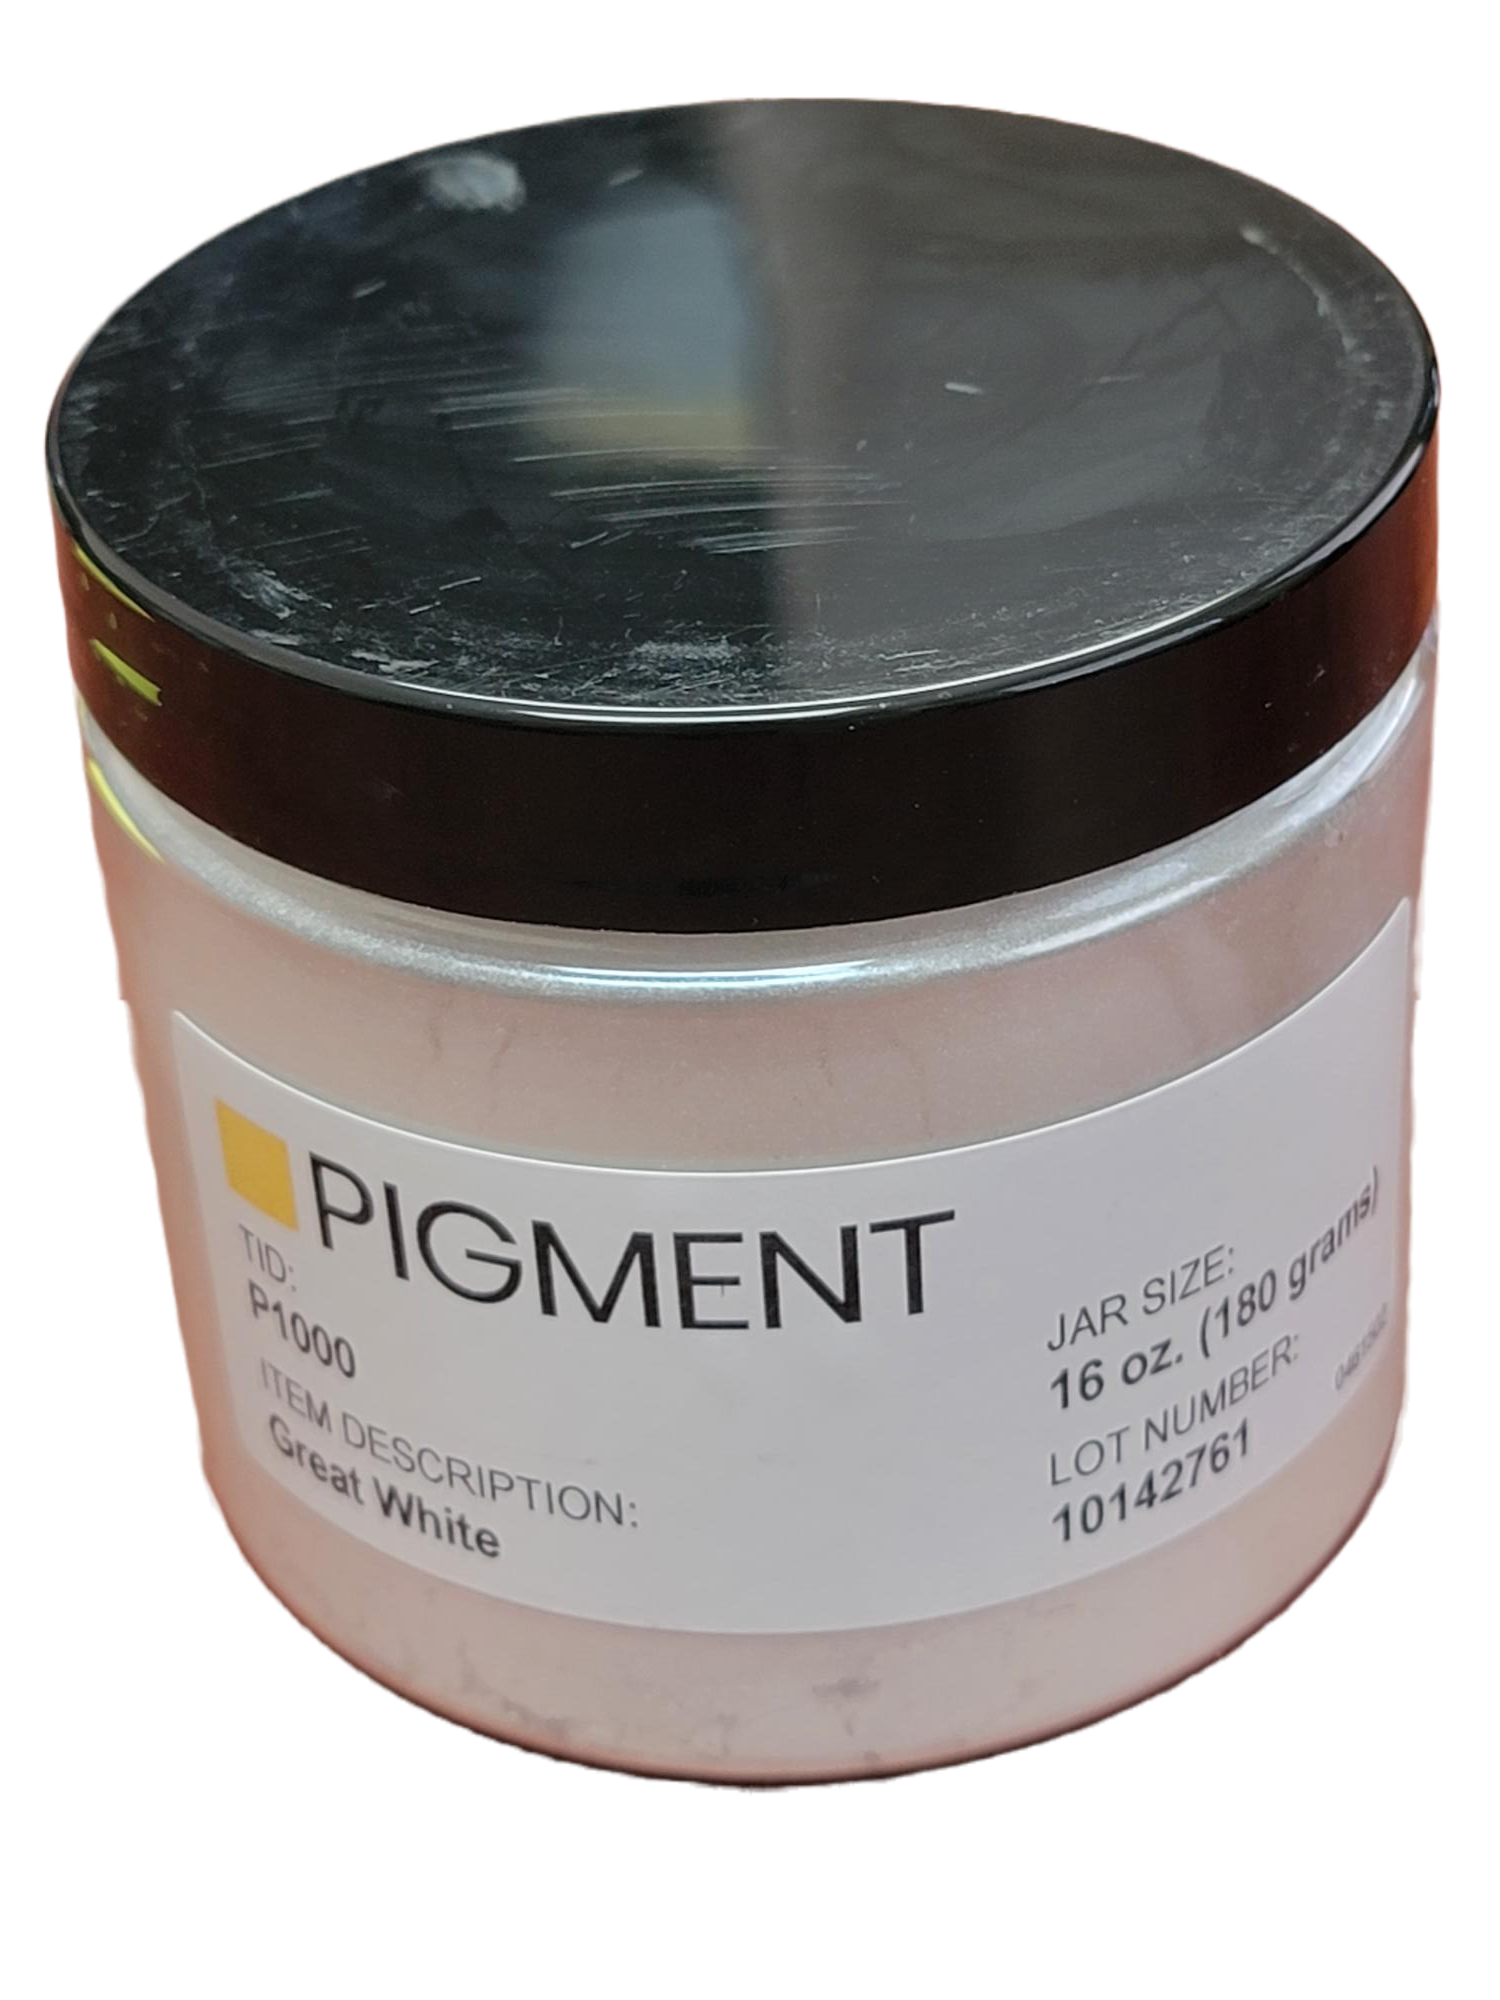 Color Pigment - 16 oz. jar